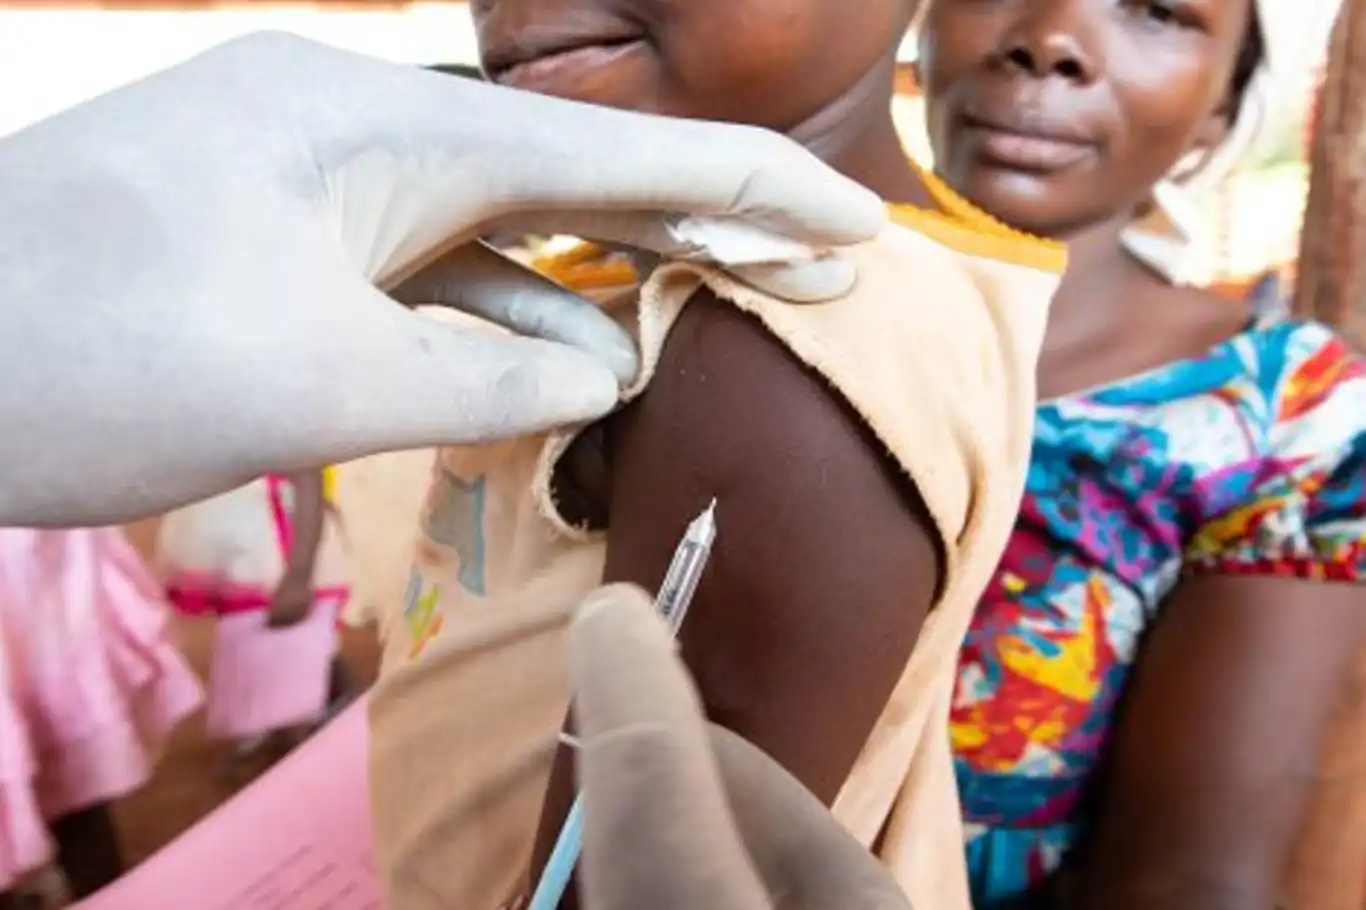 संदिग्ध खसरे के कारण नाइजीरिया में अब तक गई 19 बच्चों की जान

Nigeria Suspected Measles 19 children have died so far in Nigeria due to suspected measles